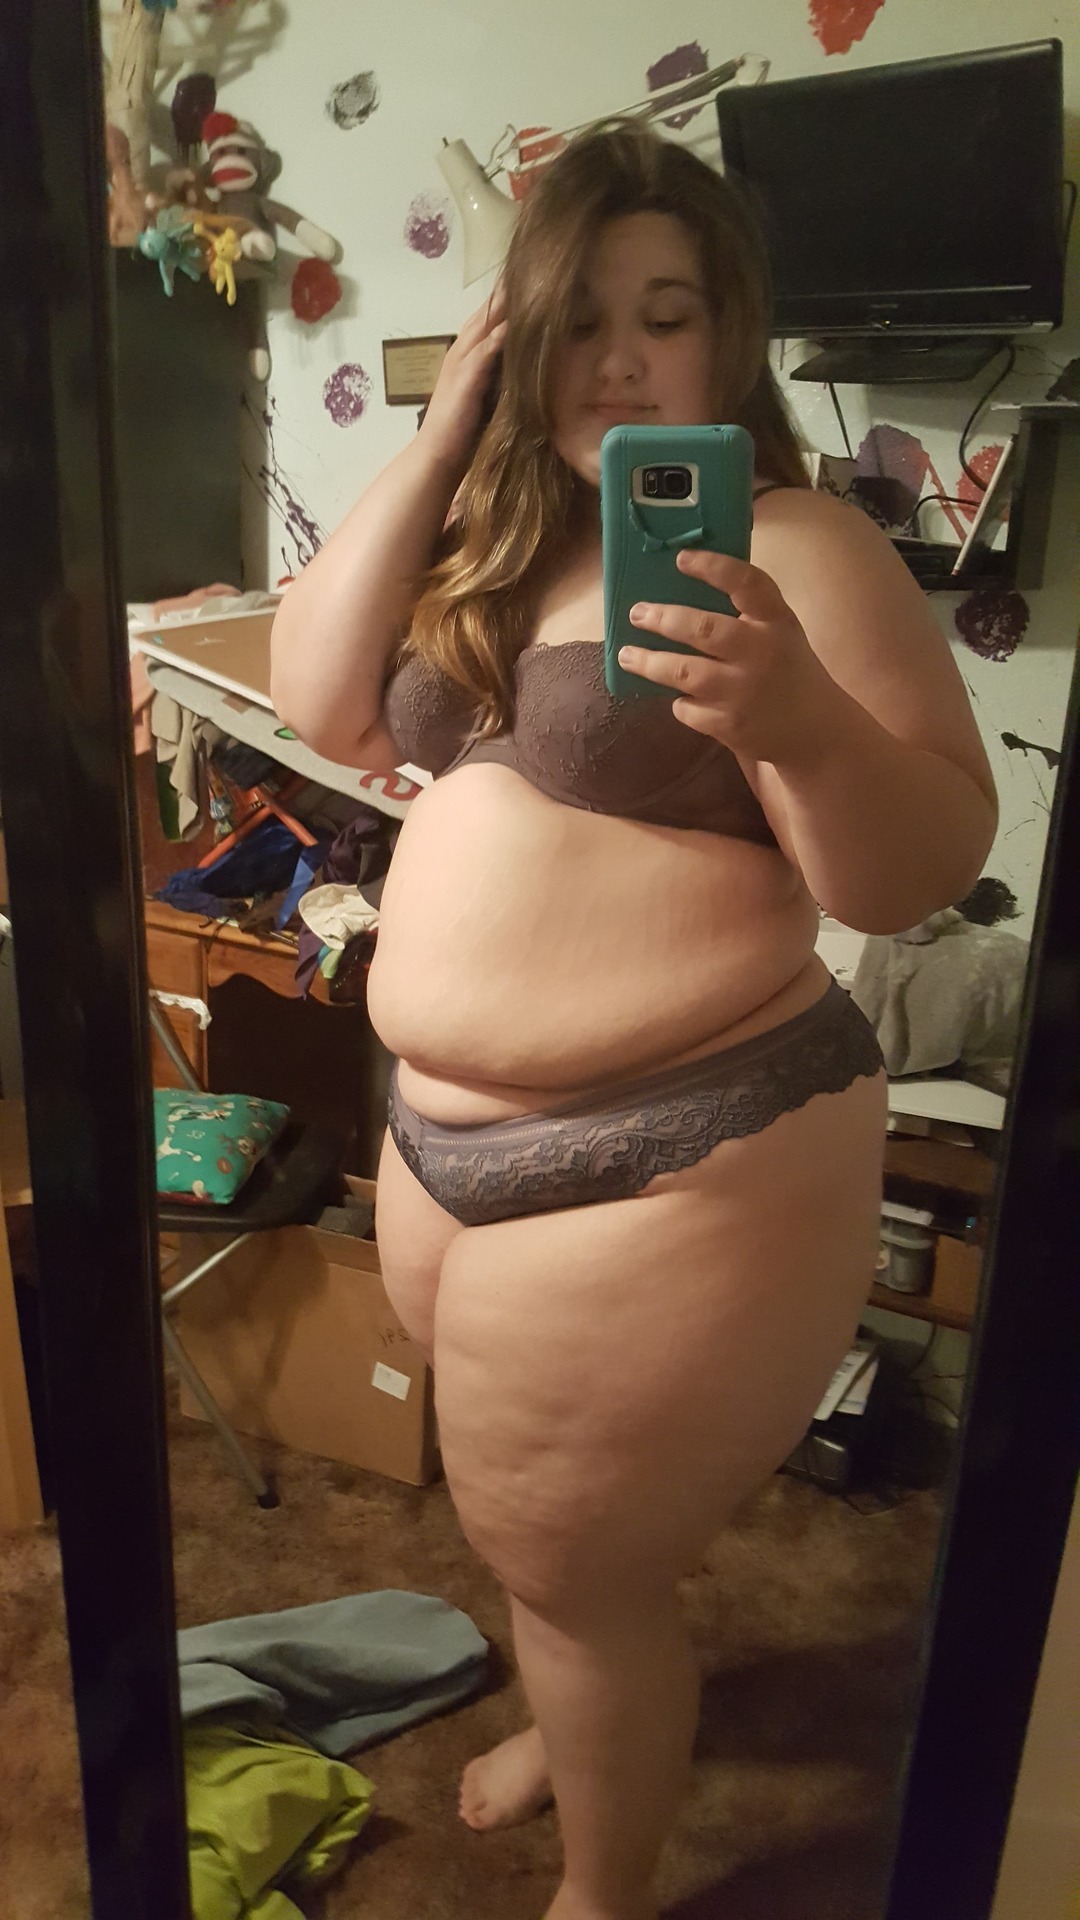 chubby girl selfie in panties